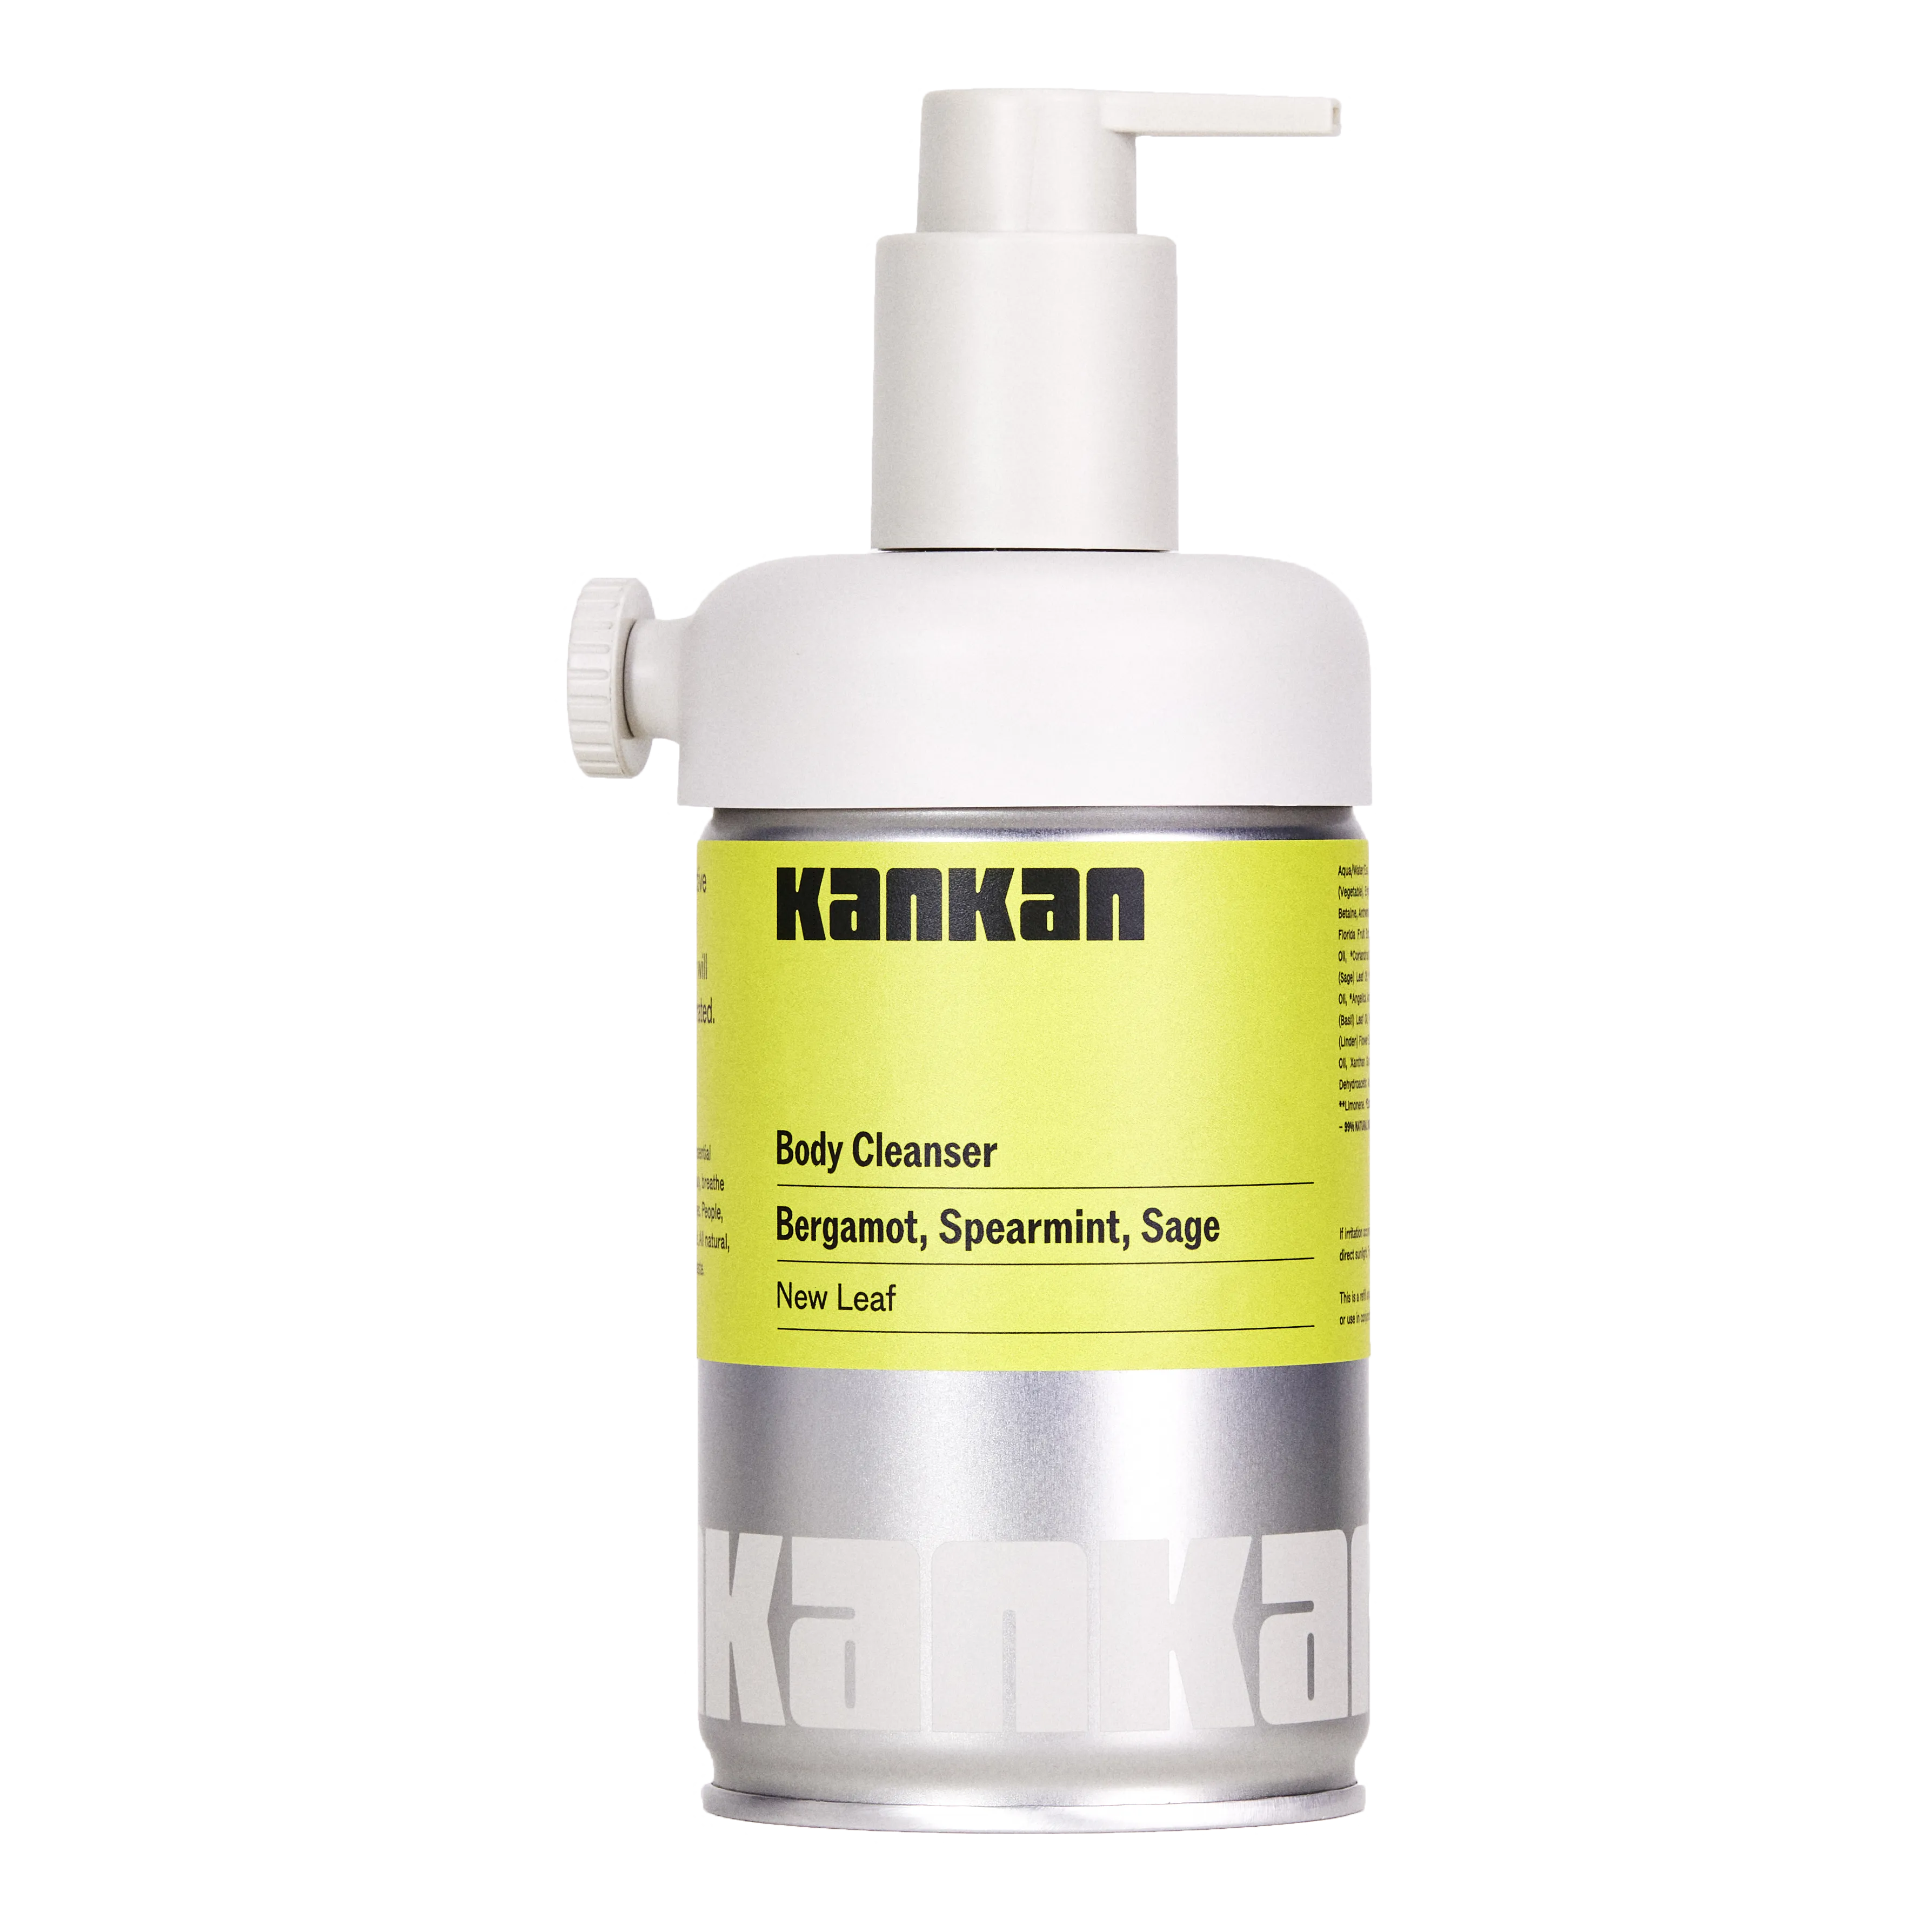 Kankan Body Cleanser Starter Kit - New Leaf 